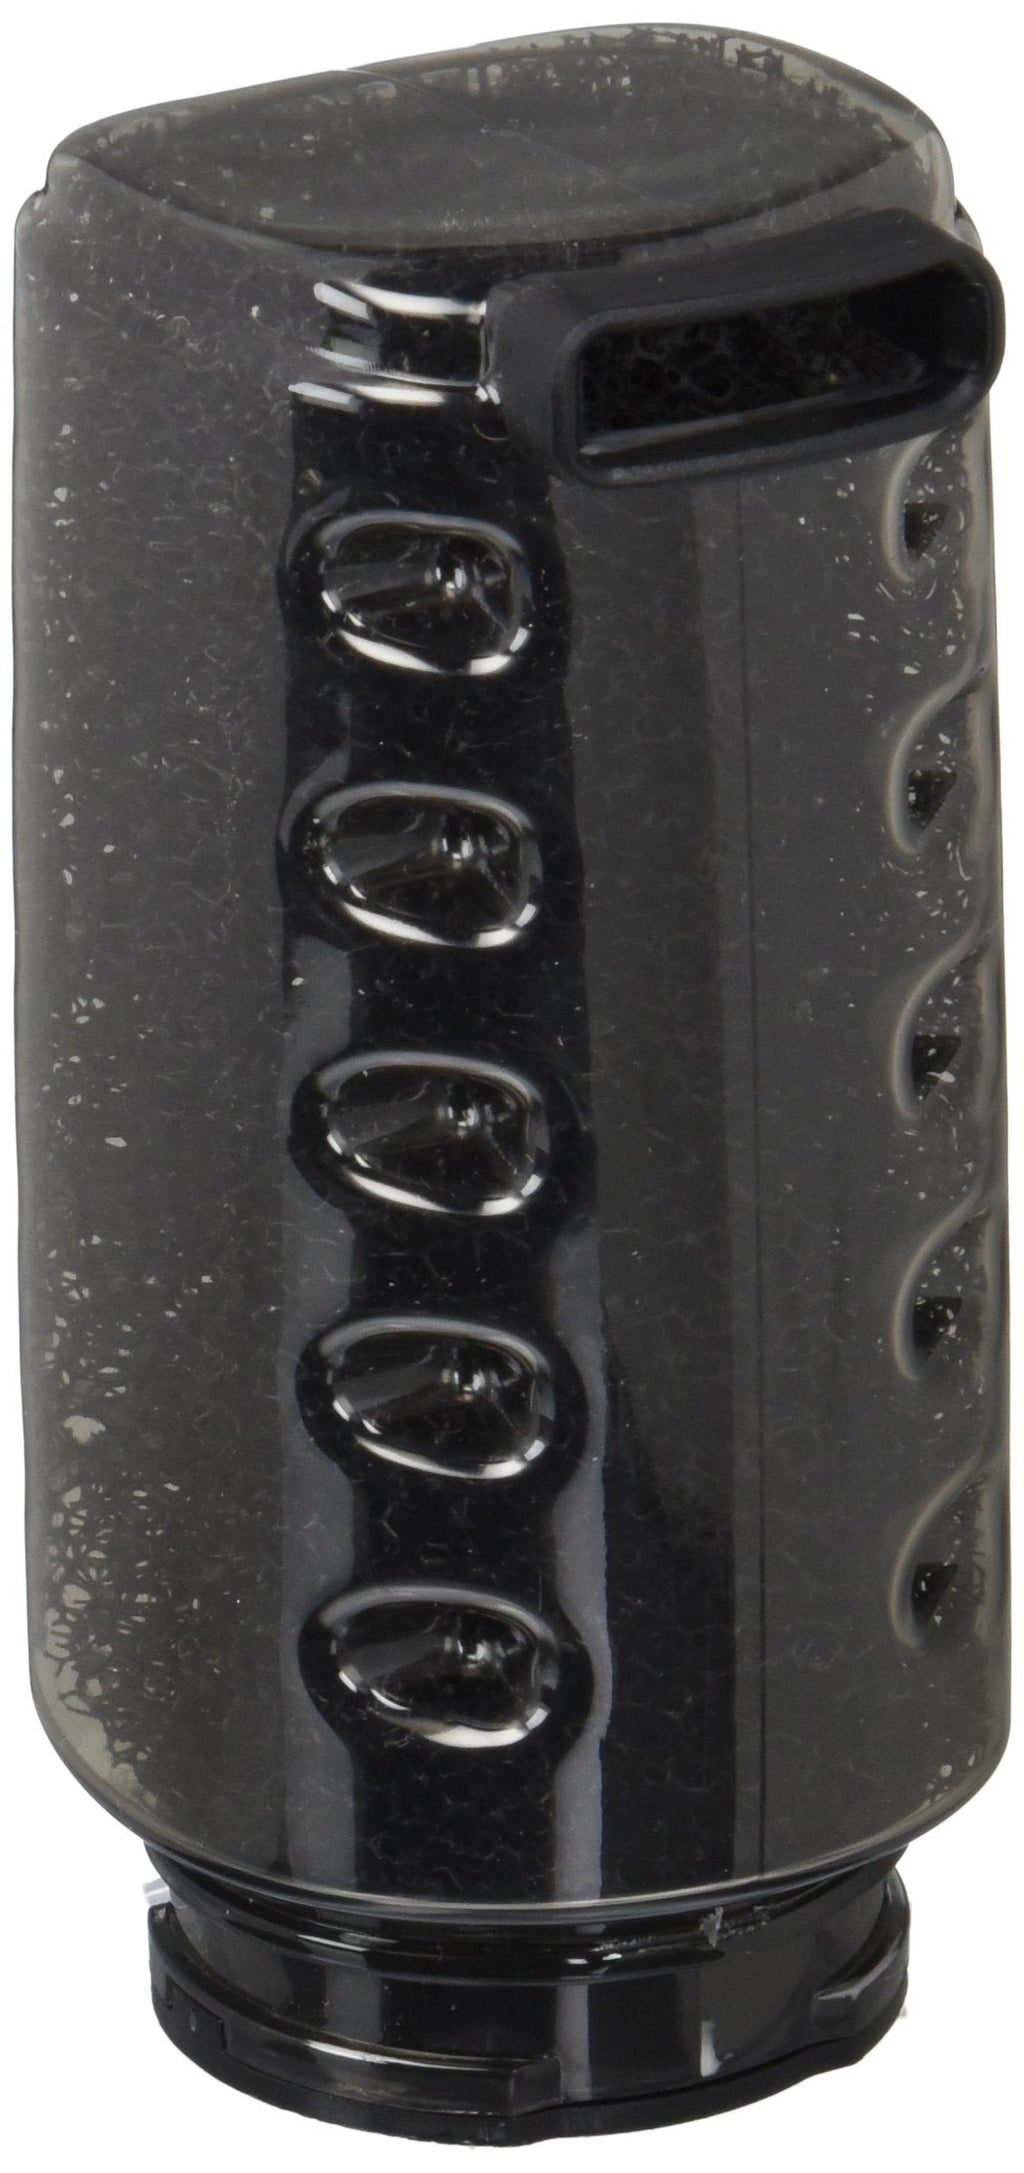 [Australia] - Cobalt Aquatics 52015 Basic Replacement Cartridge 